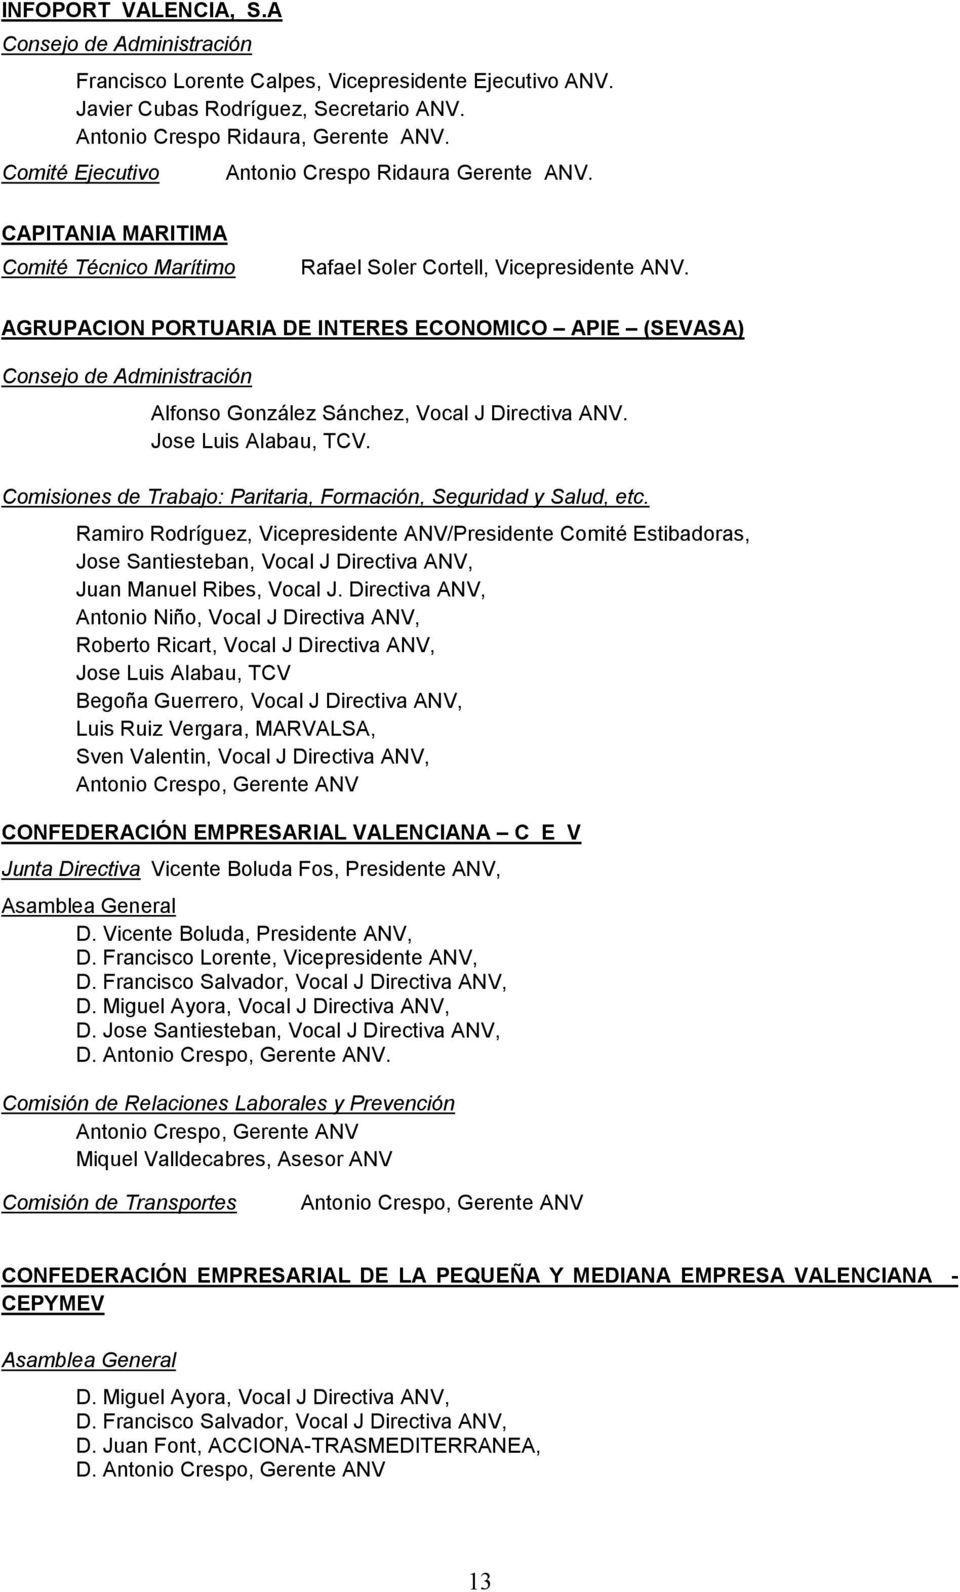 AGRUPACION PORTUARIA DE INTERES ECONOMICO APIE (SEVASA) Consejo de Administración Alfonso González Sánchez, Vocal J Directiva ANV. Jose Luis Alabau, TCV.